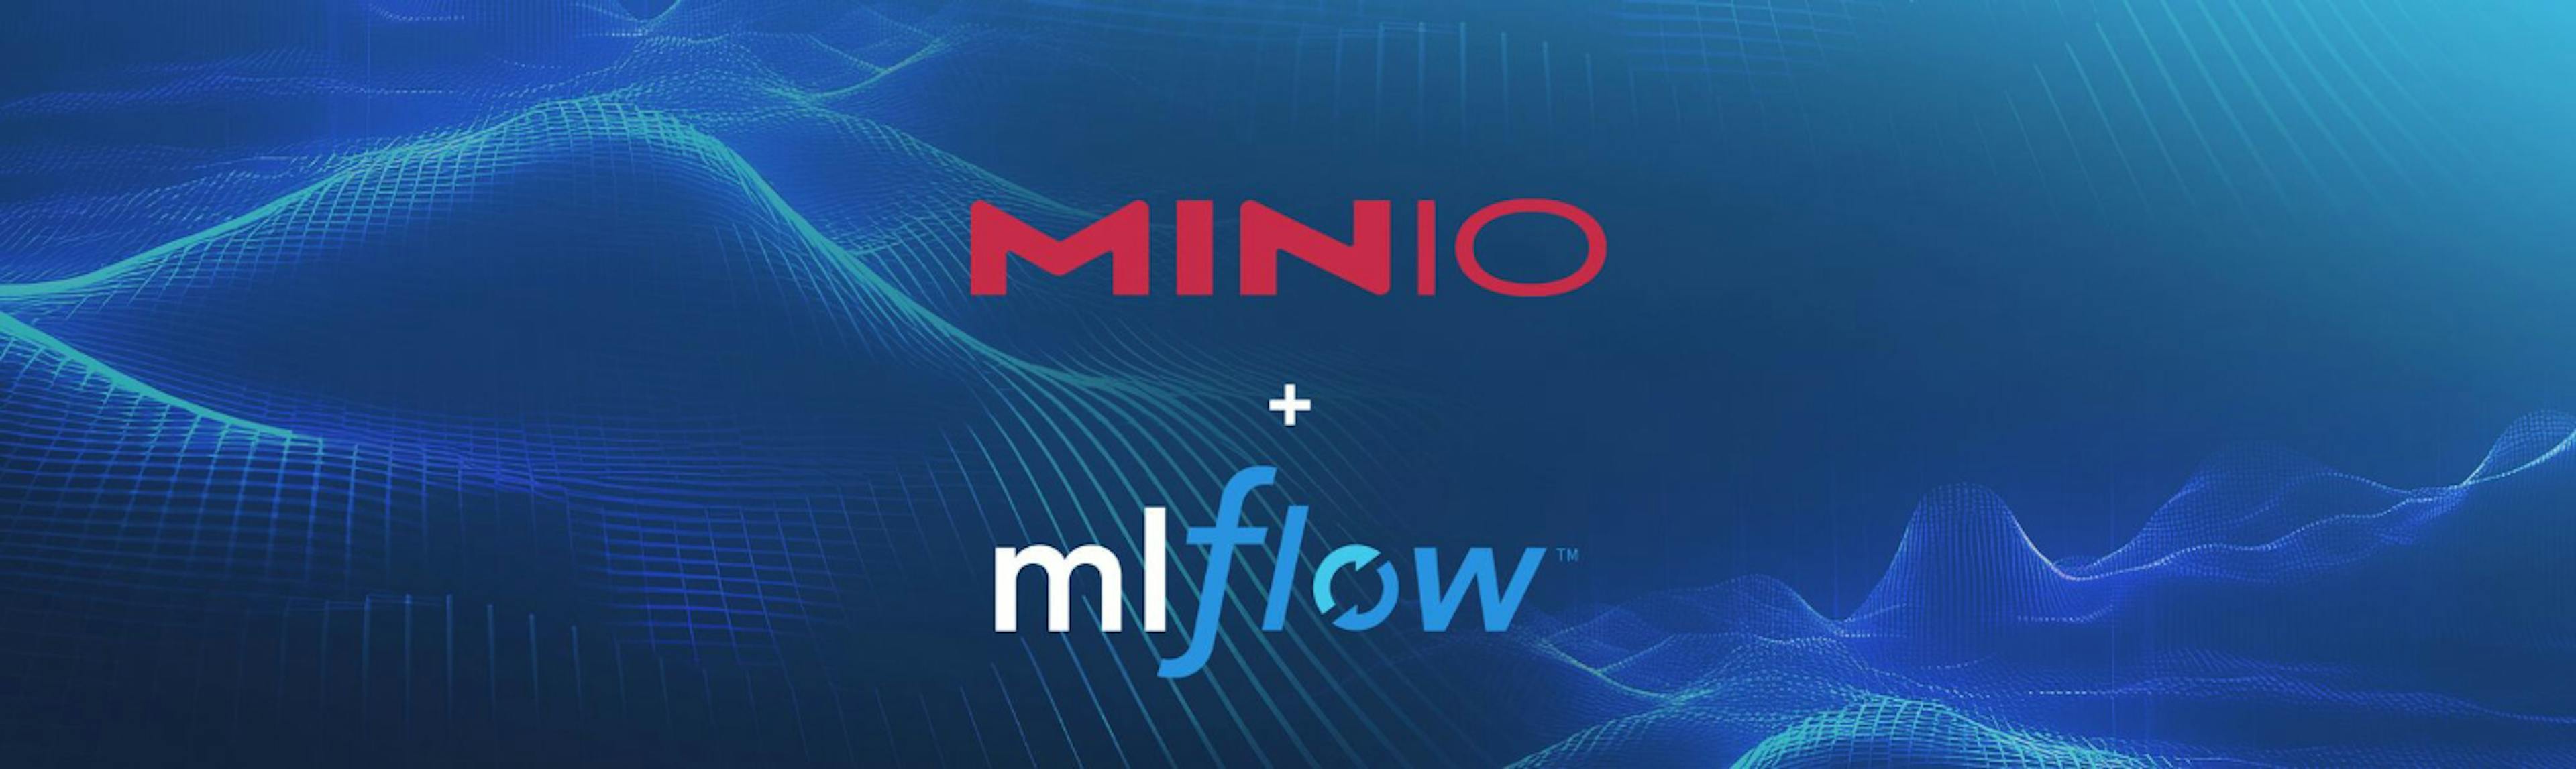 featured image - MLFlow 및 MinIO를 사용하여 개발 시스템을 설정하는 방법